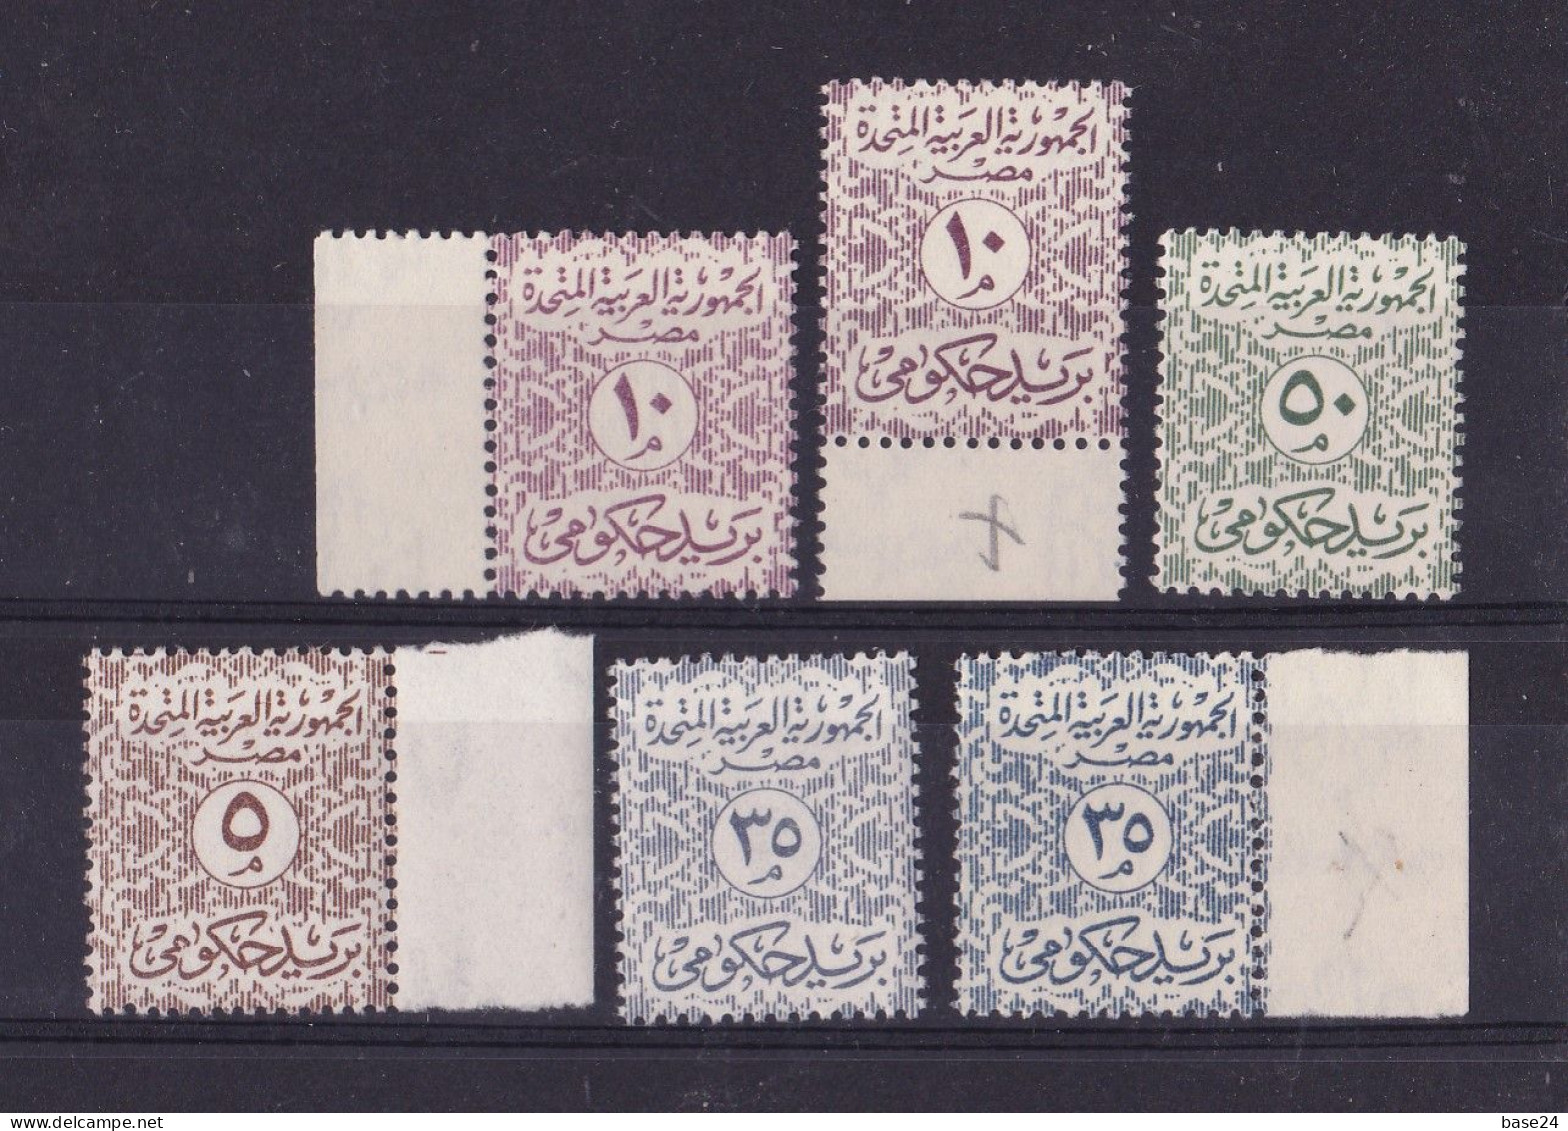 1962 Egitto Egypt UAR SERVIZI Serie Di 6 Valori MNH** OFFICIAL - Dienstmarken